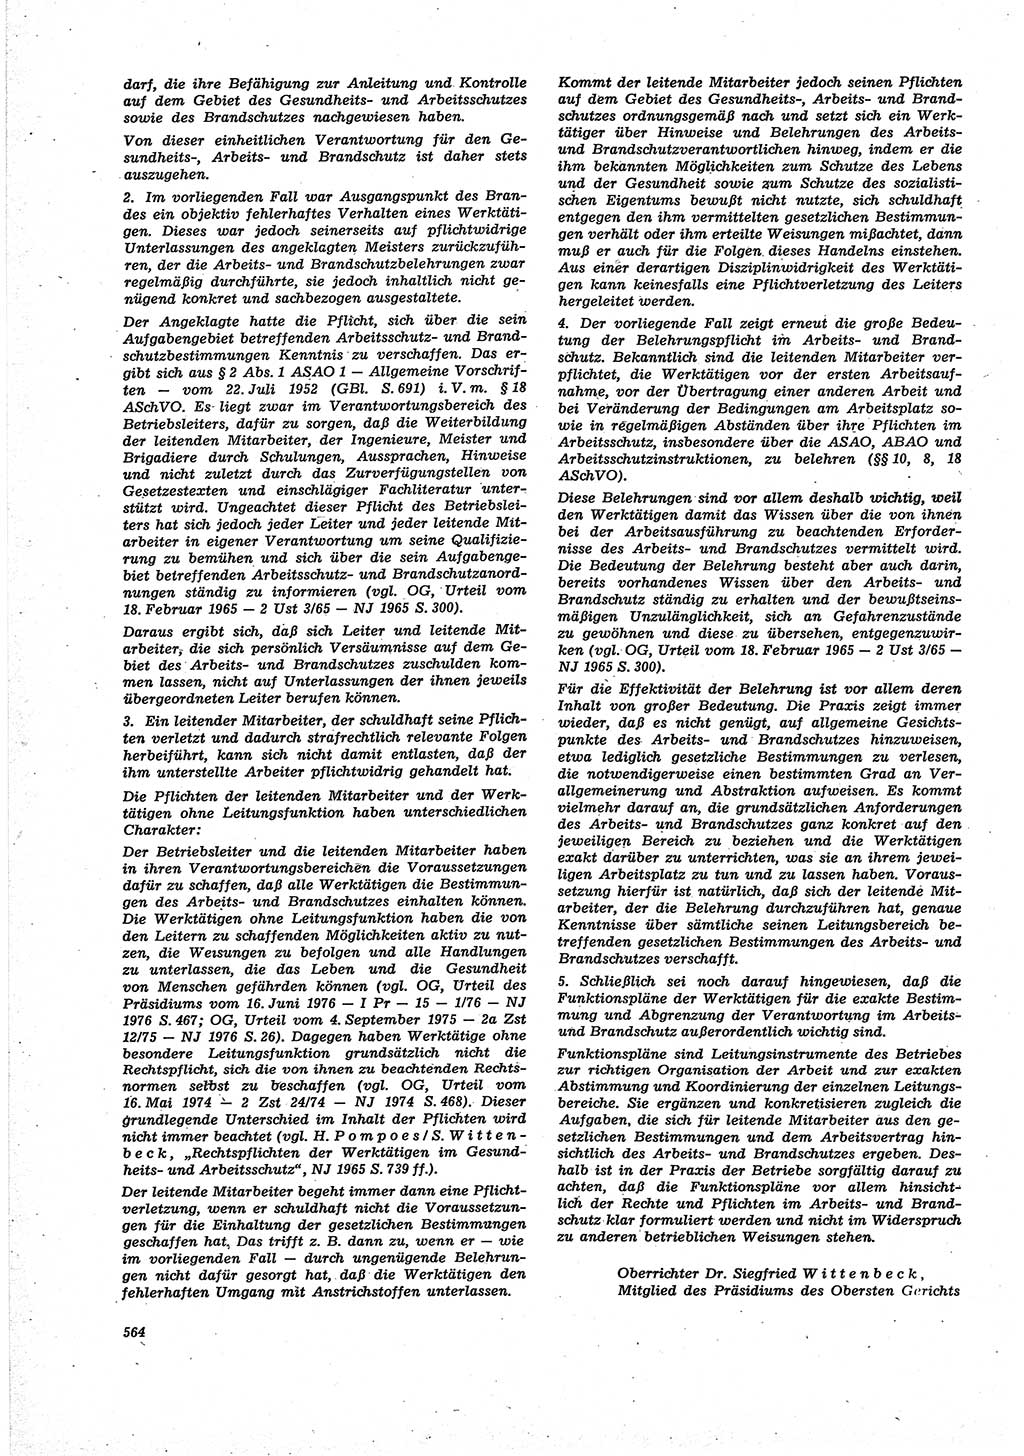 Neue Justiz (NJ), Zeitschrift für Recht und Rechtswissenschaft [Deutsche Demokratische Republik (DDR)], 30. Jahrgang 1976, Seite 564 (NJ DDR 1976, S. 564)